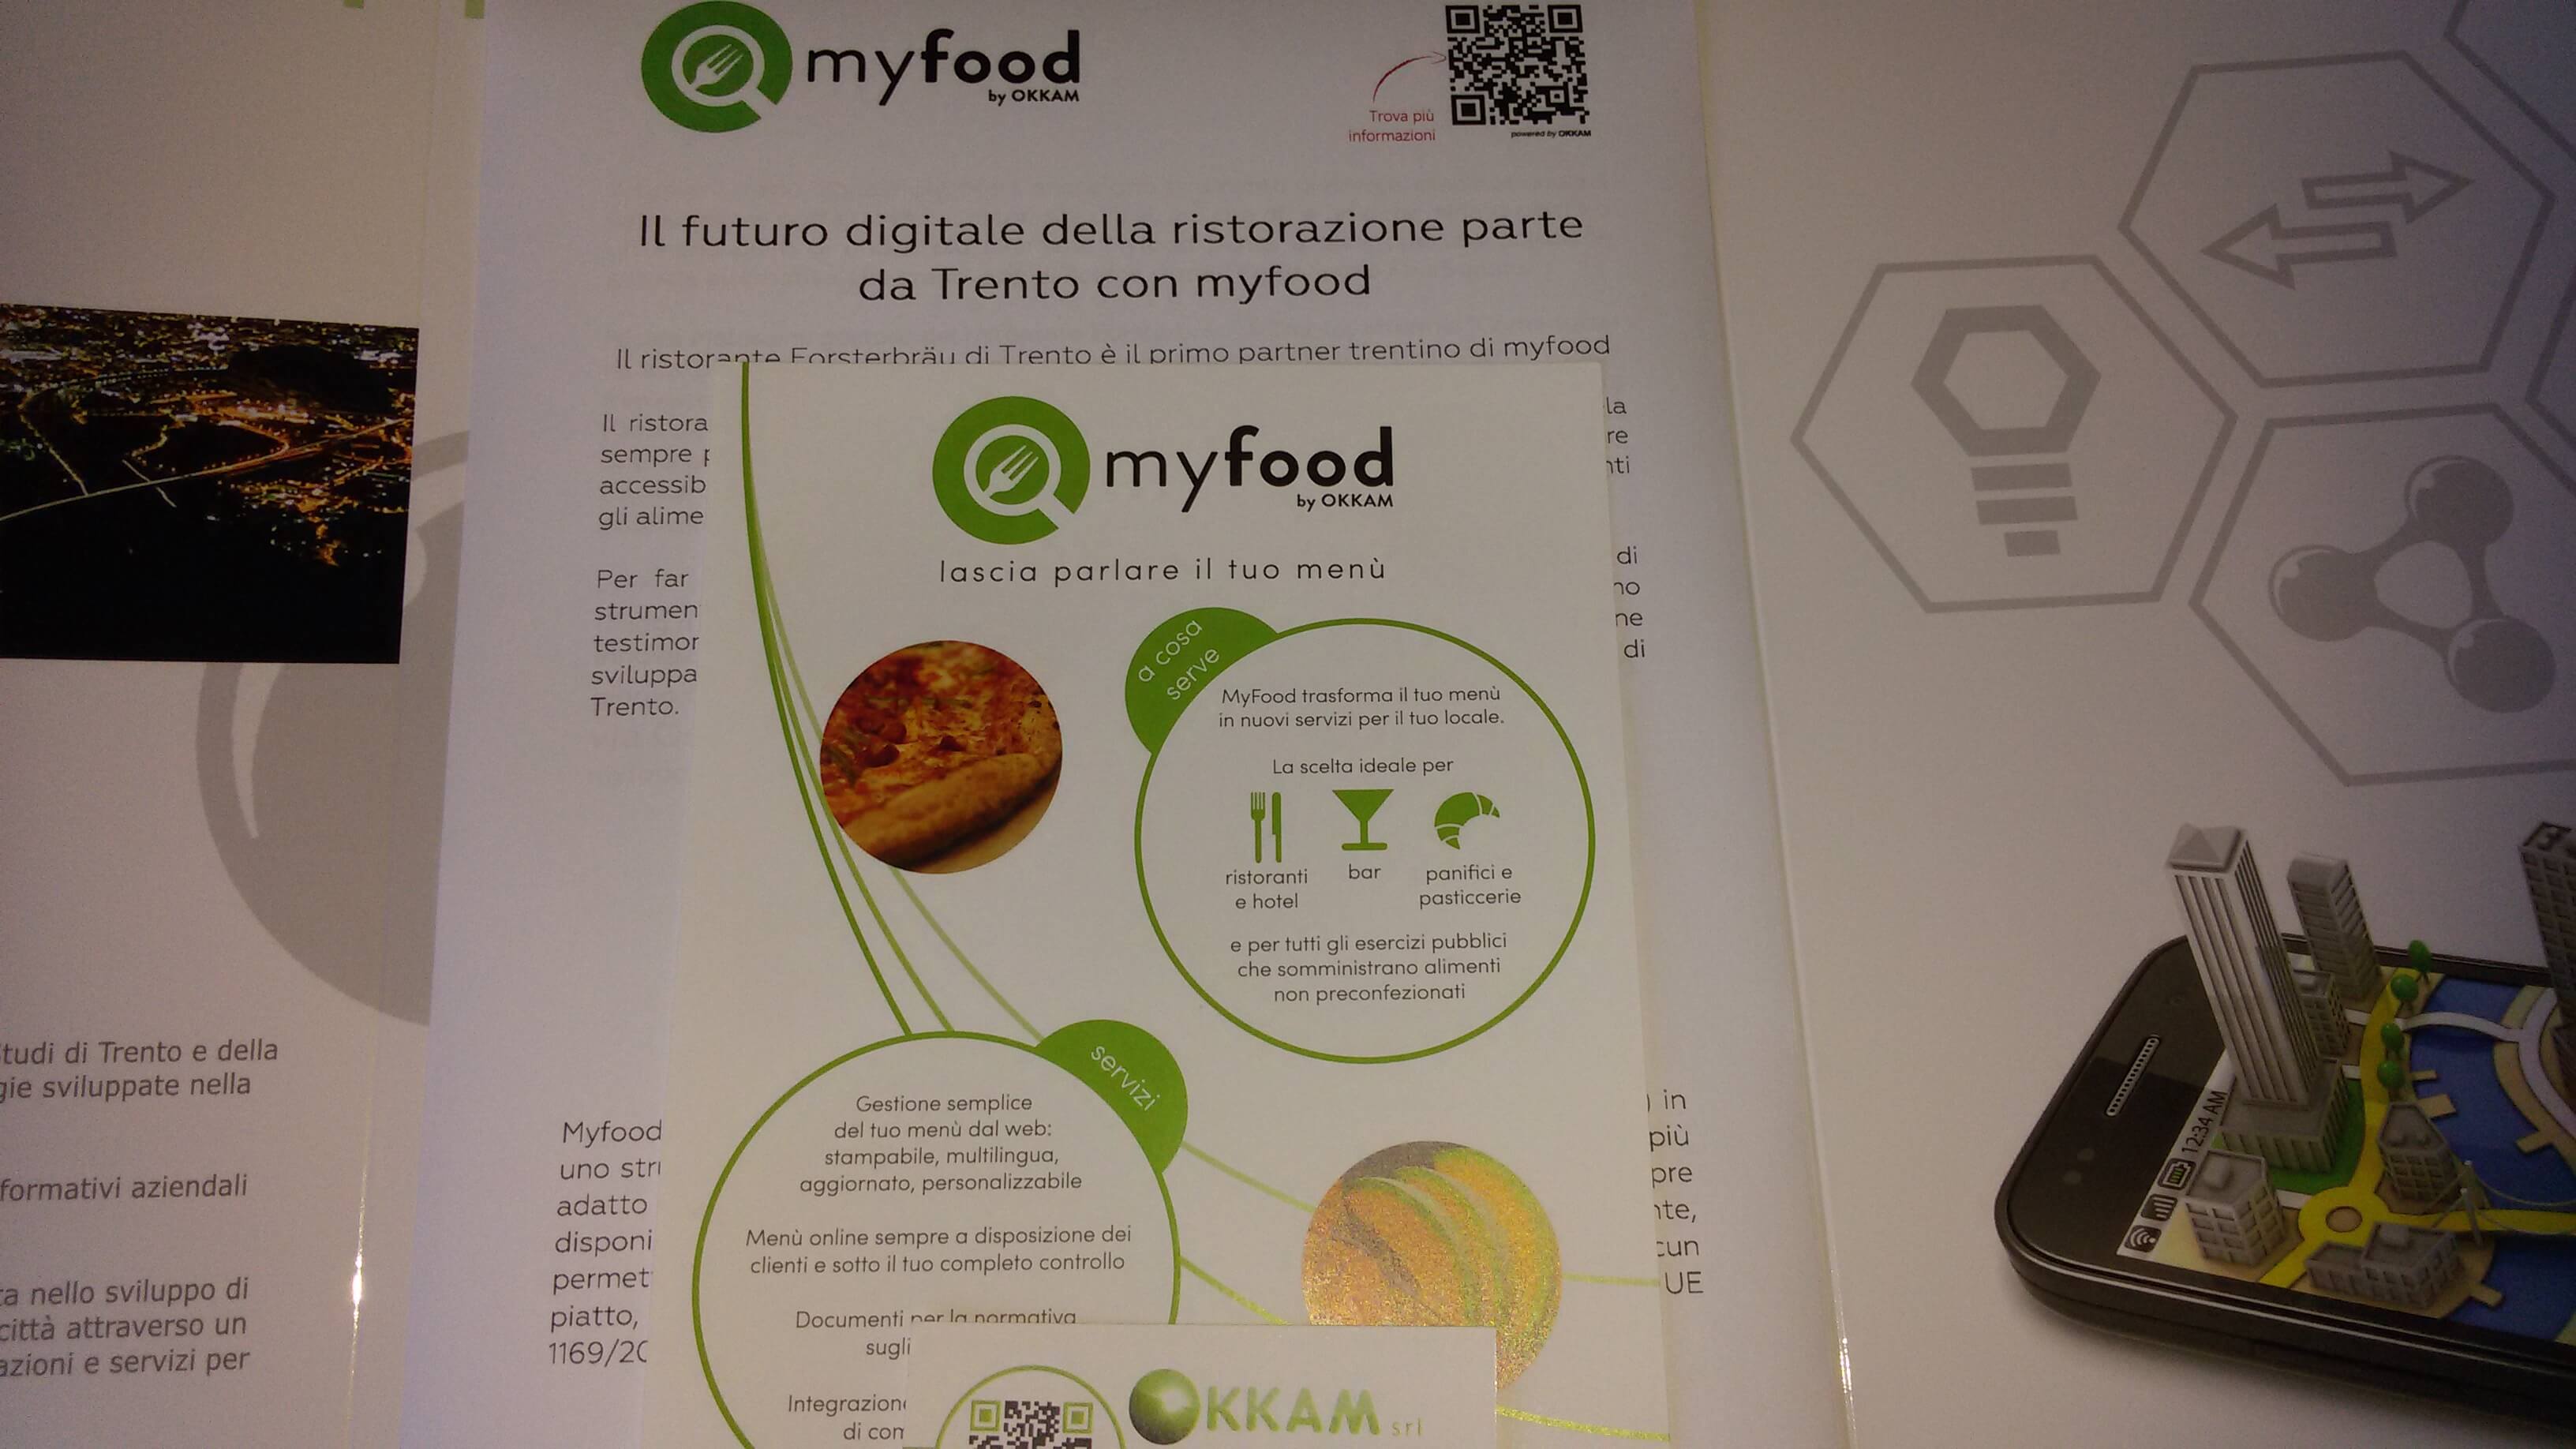 La cartella della conferenza stampa myfood alla Forst di Trento